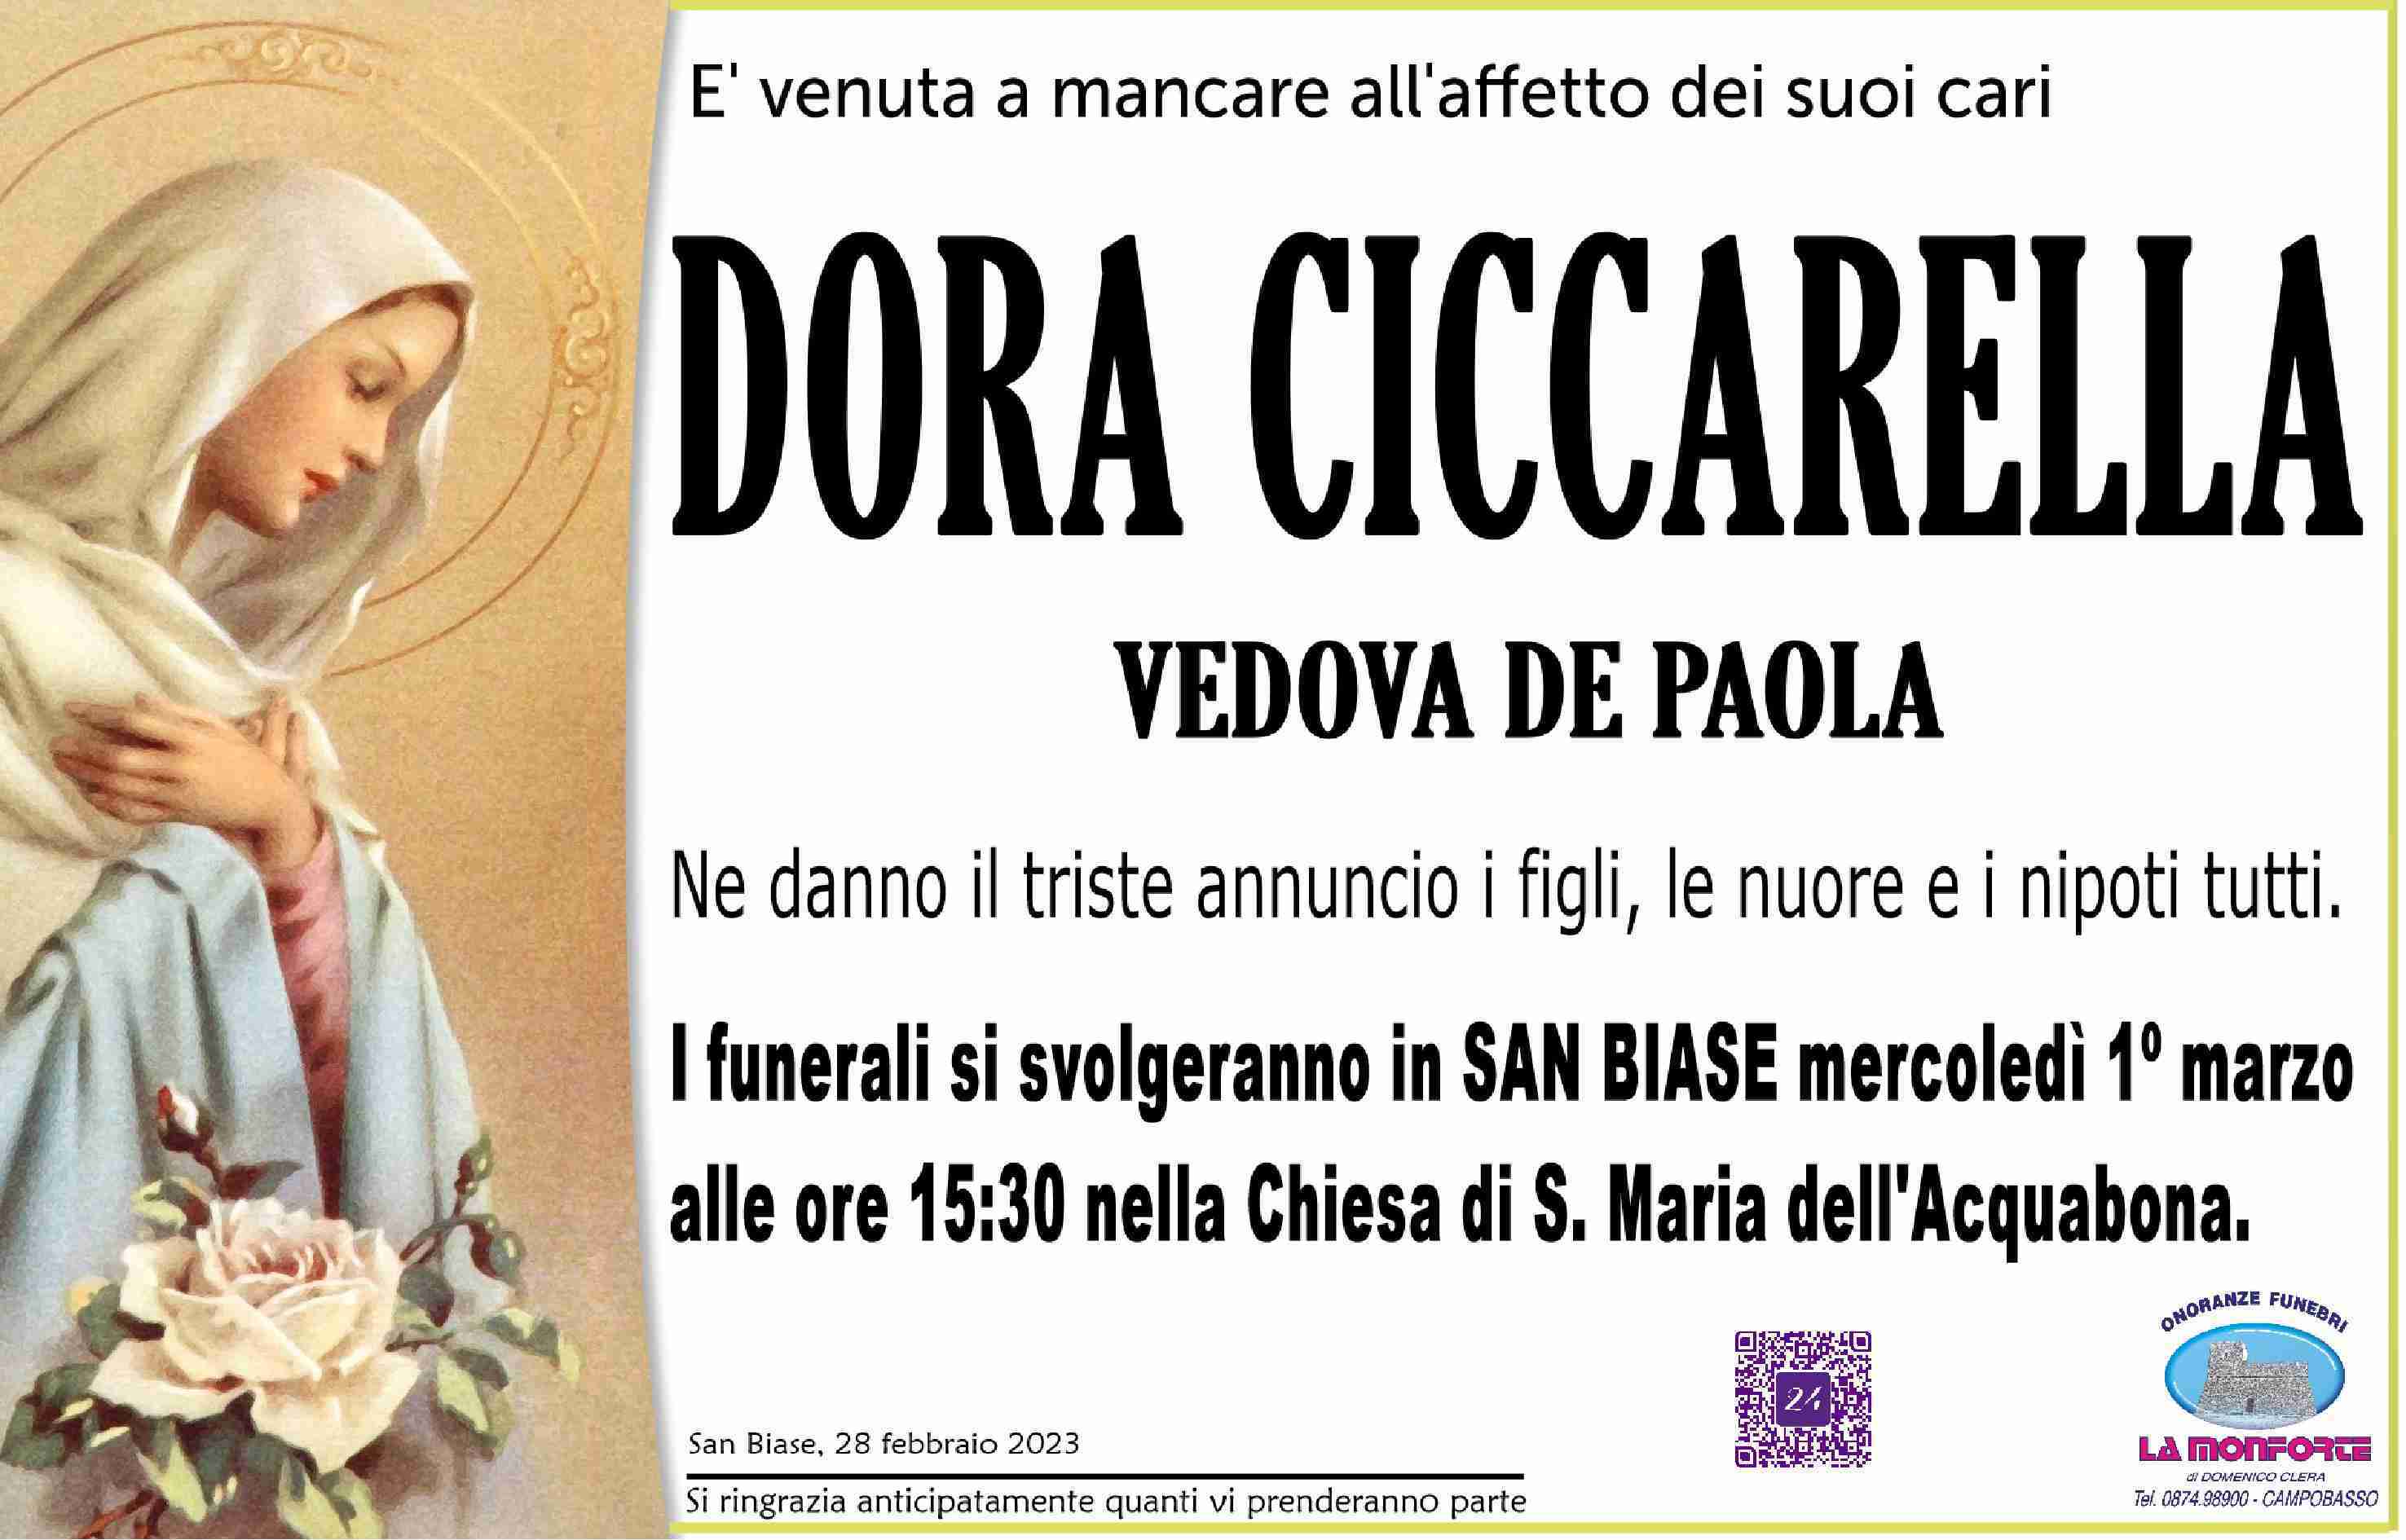 Dora Ciccarella